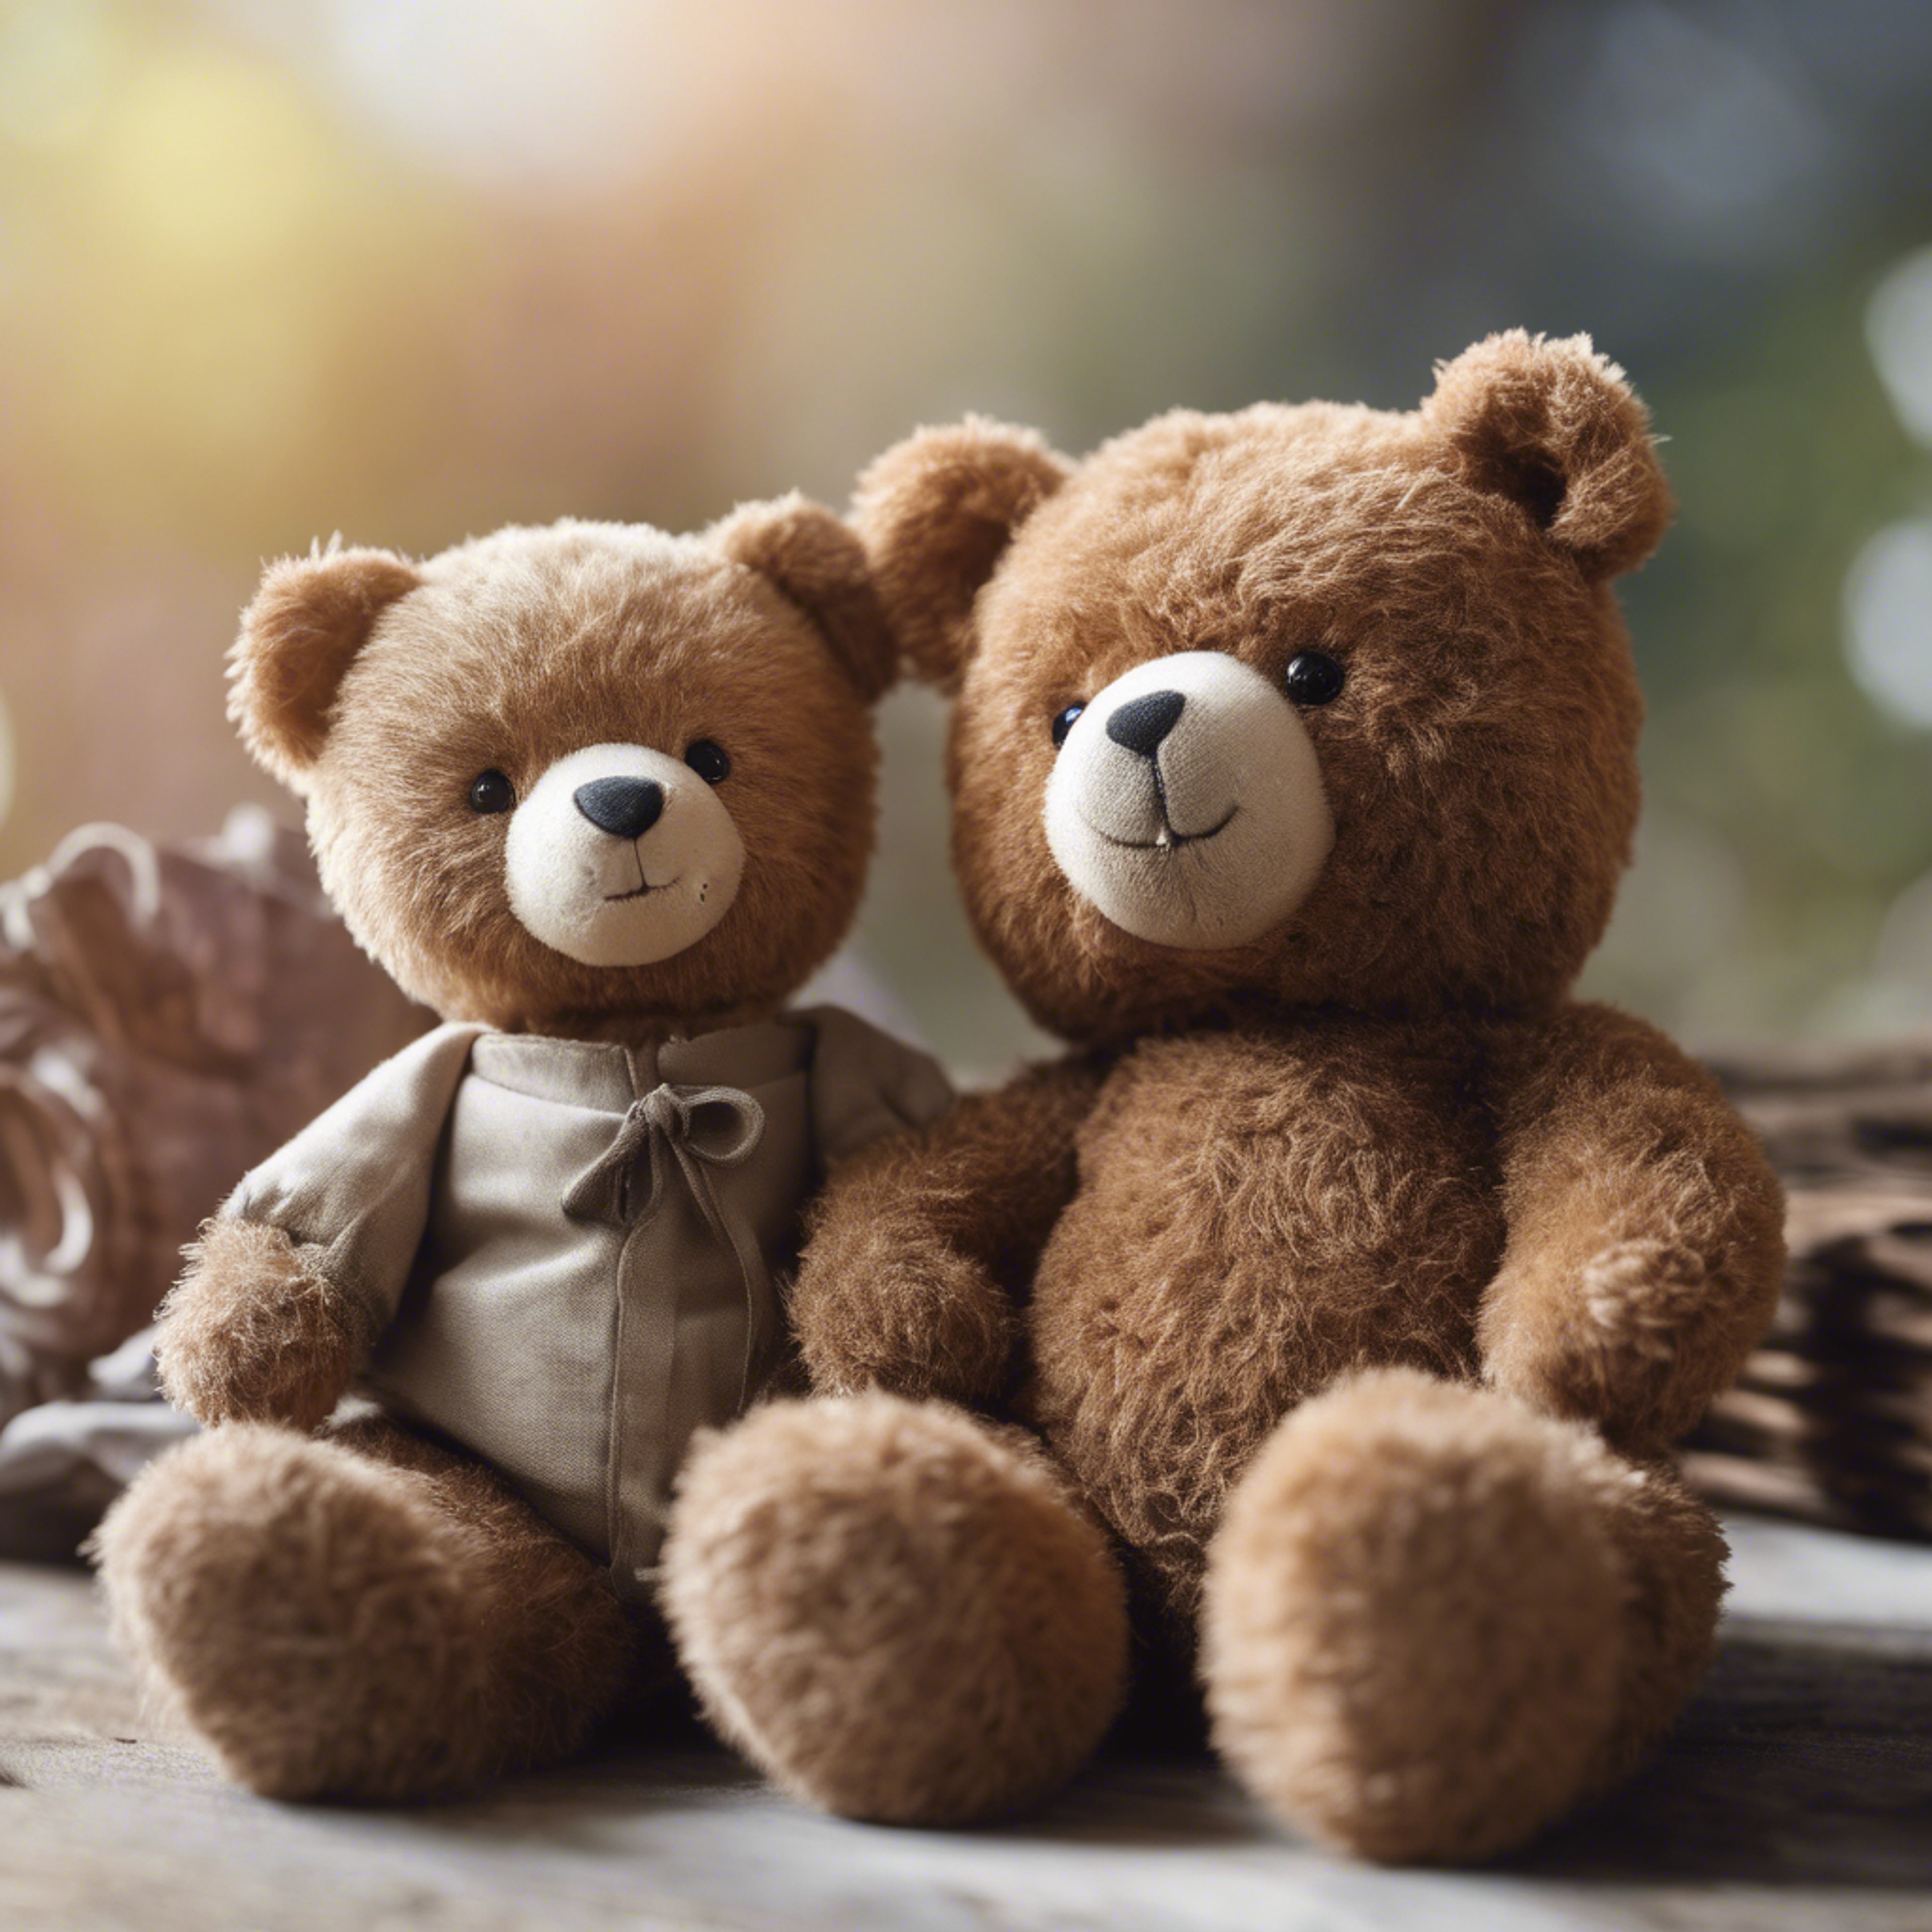 A teddy bear and a real bear cub sitting side by side comparing sizes.壁紙[ecf7dbb664a44b6083b1]